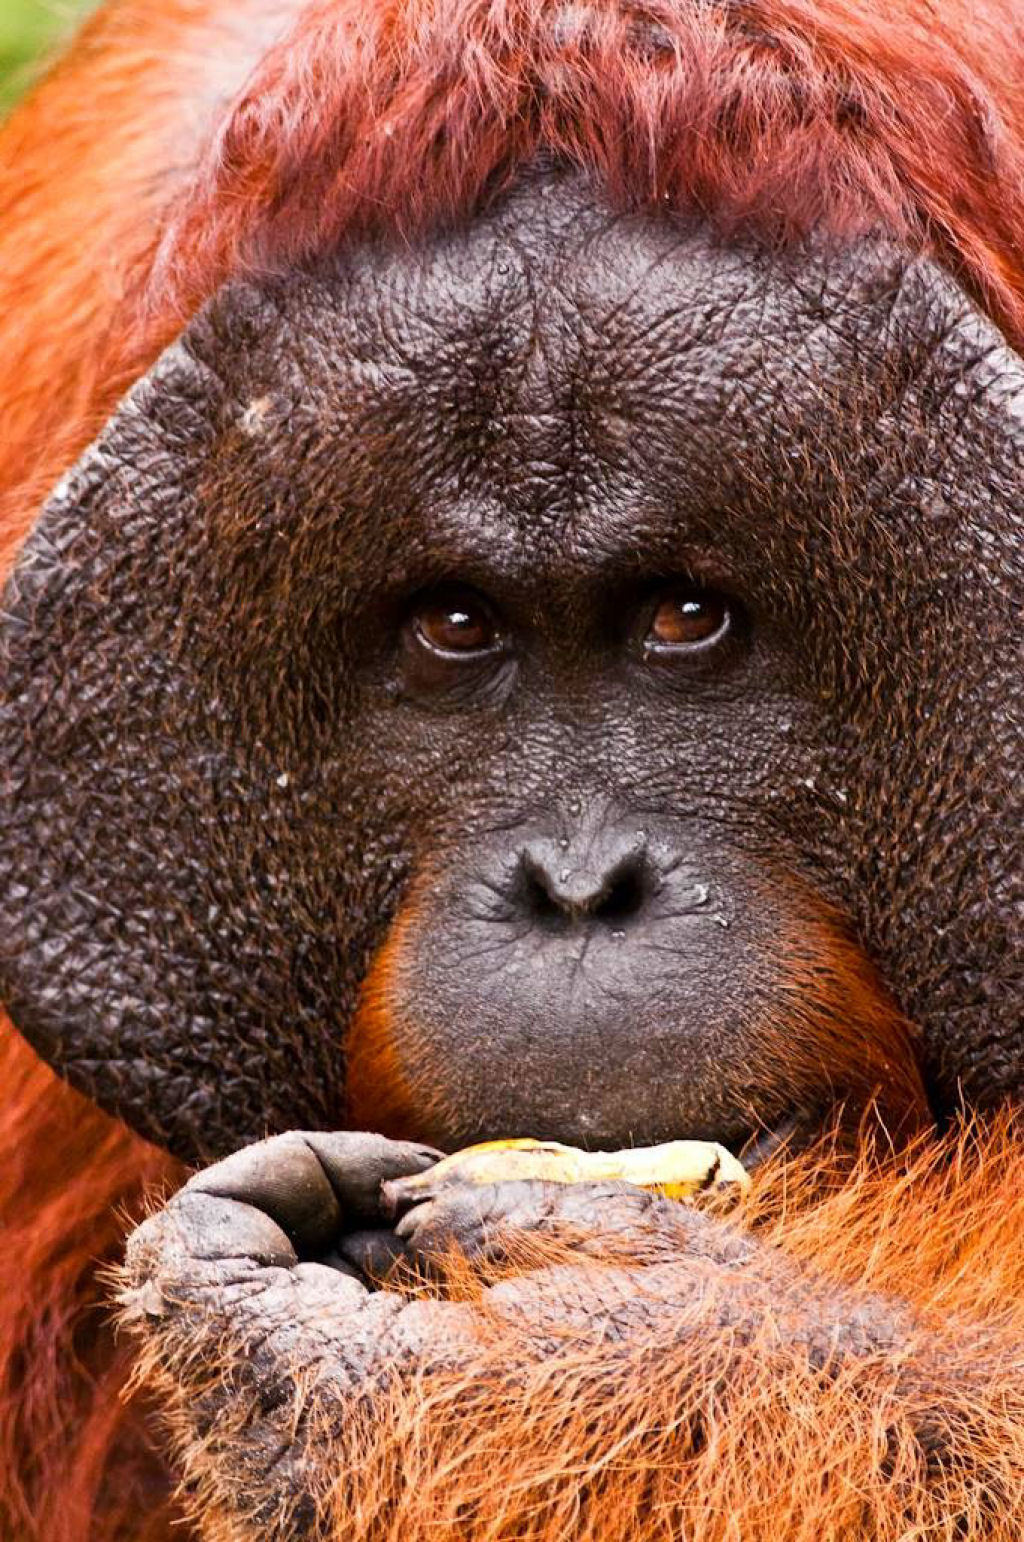 Mistério: Por que alguns orangotangos machos têm a cara flangeada e outros não? 04